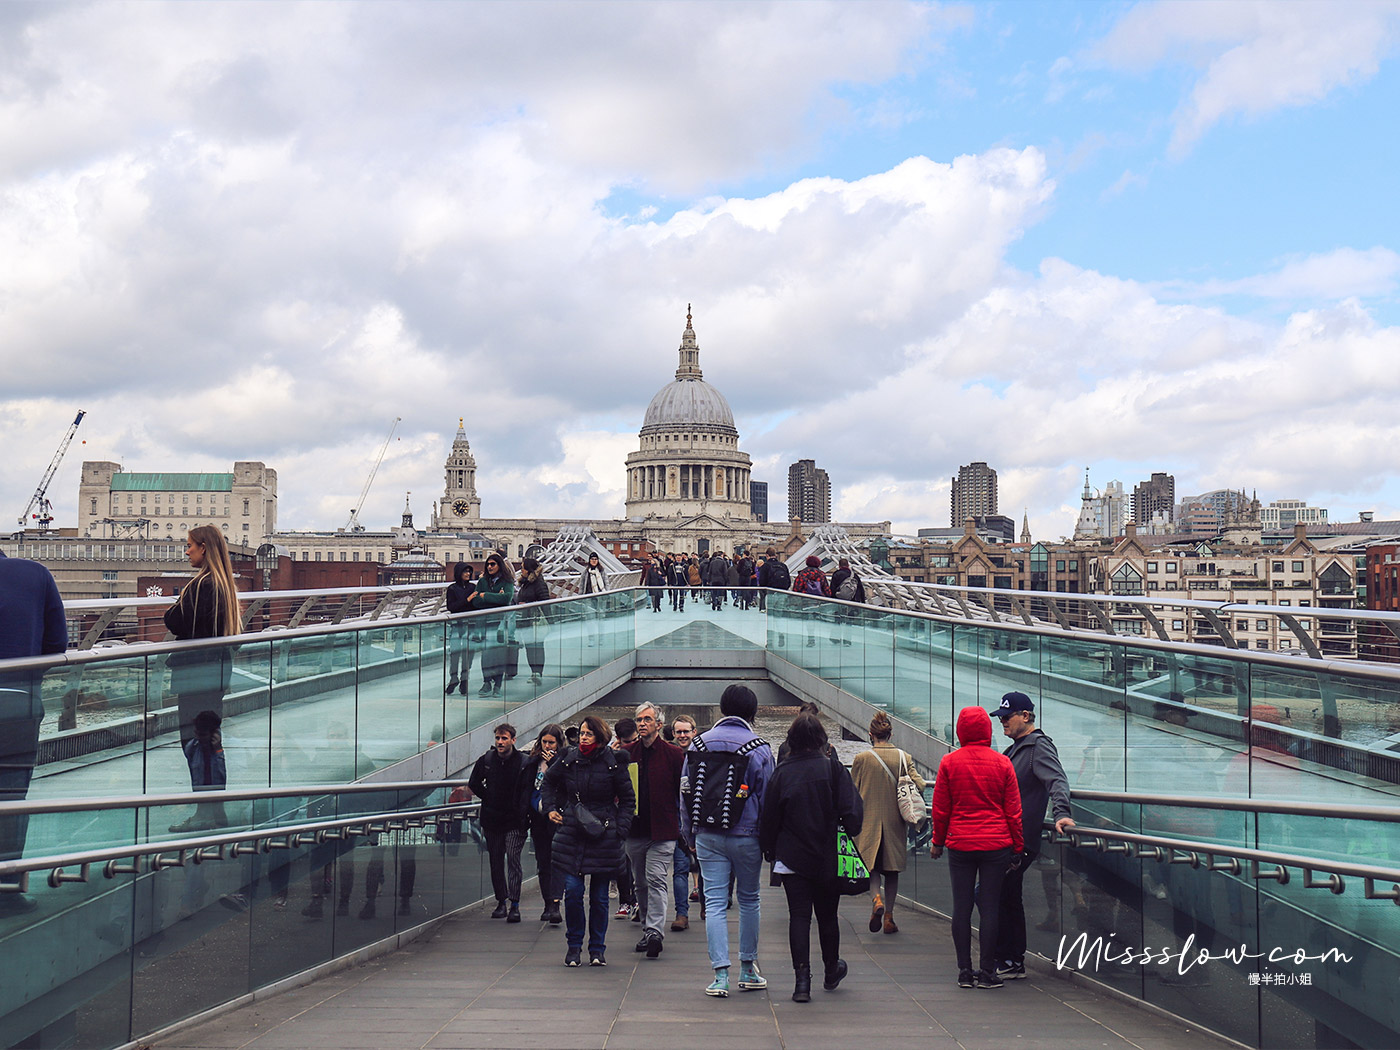 拍攝視角Part2：從Tate Modern泰特美式館這側走上千禧橋Millennium Bridge，拍的聖保羅大教堂  